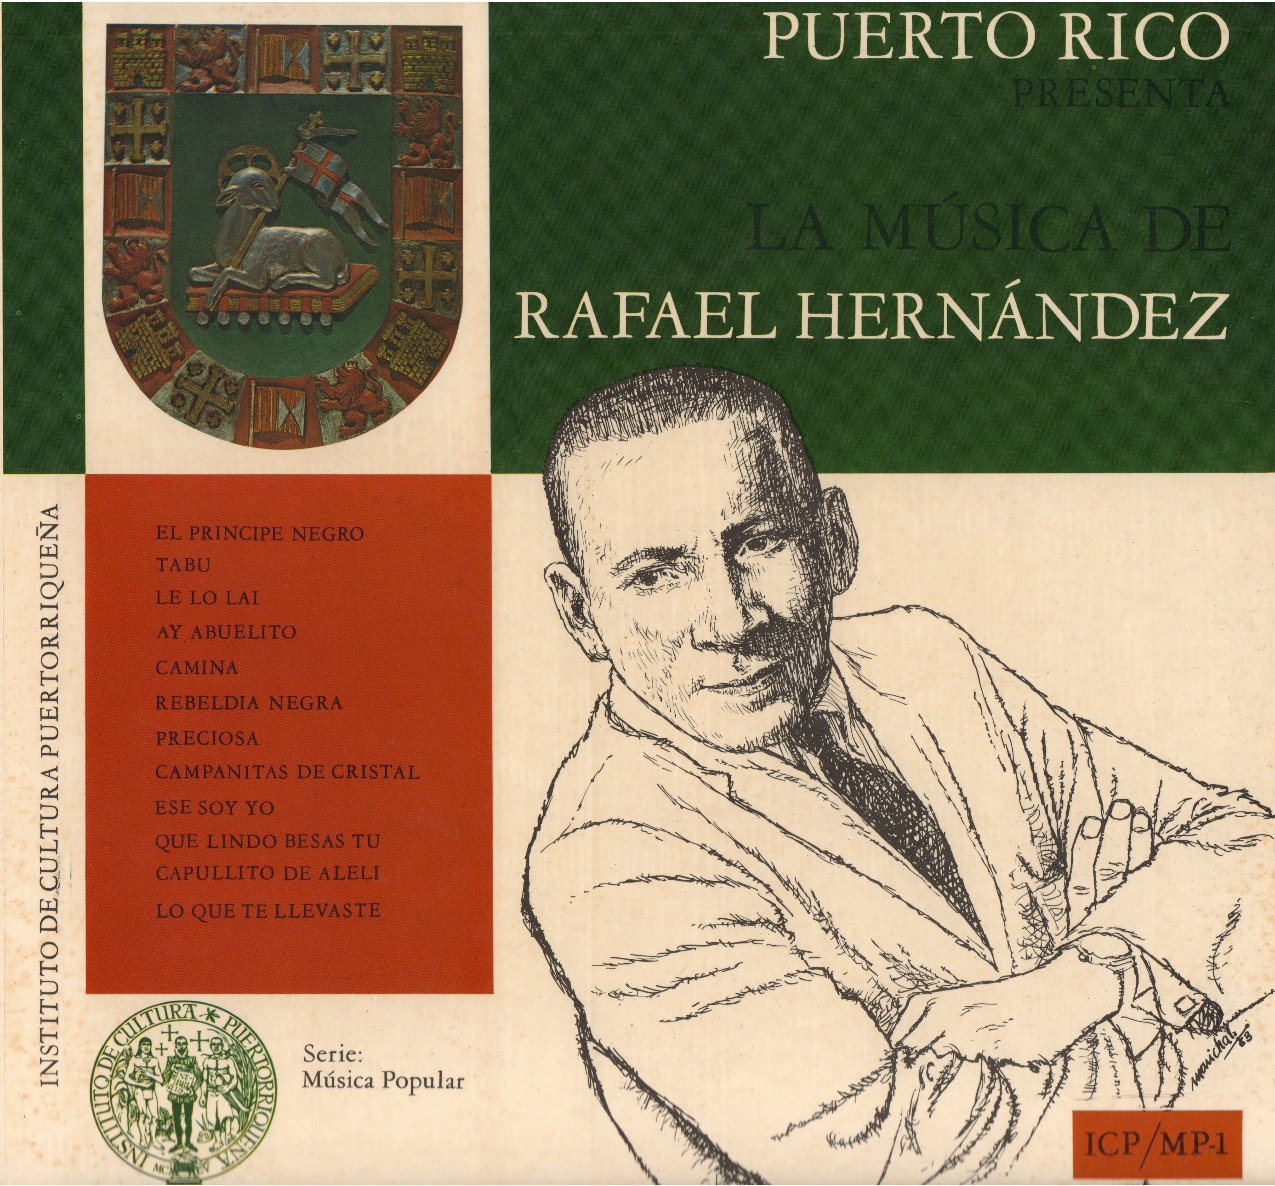 Puerto Rico presenta...La Música de Rafael Hernández